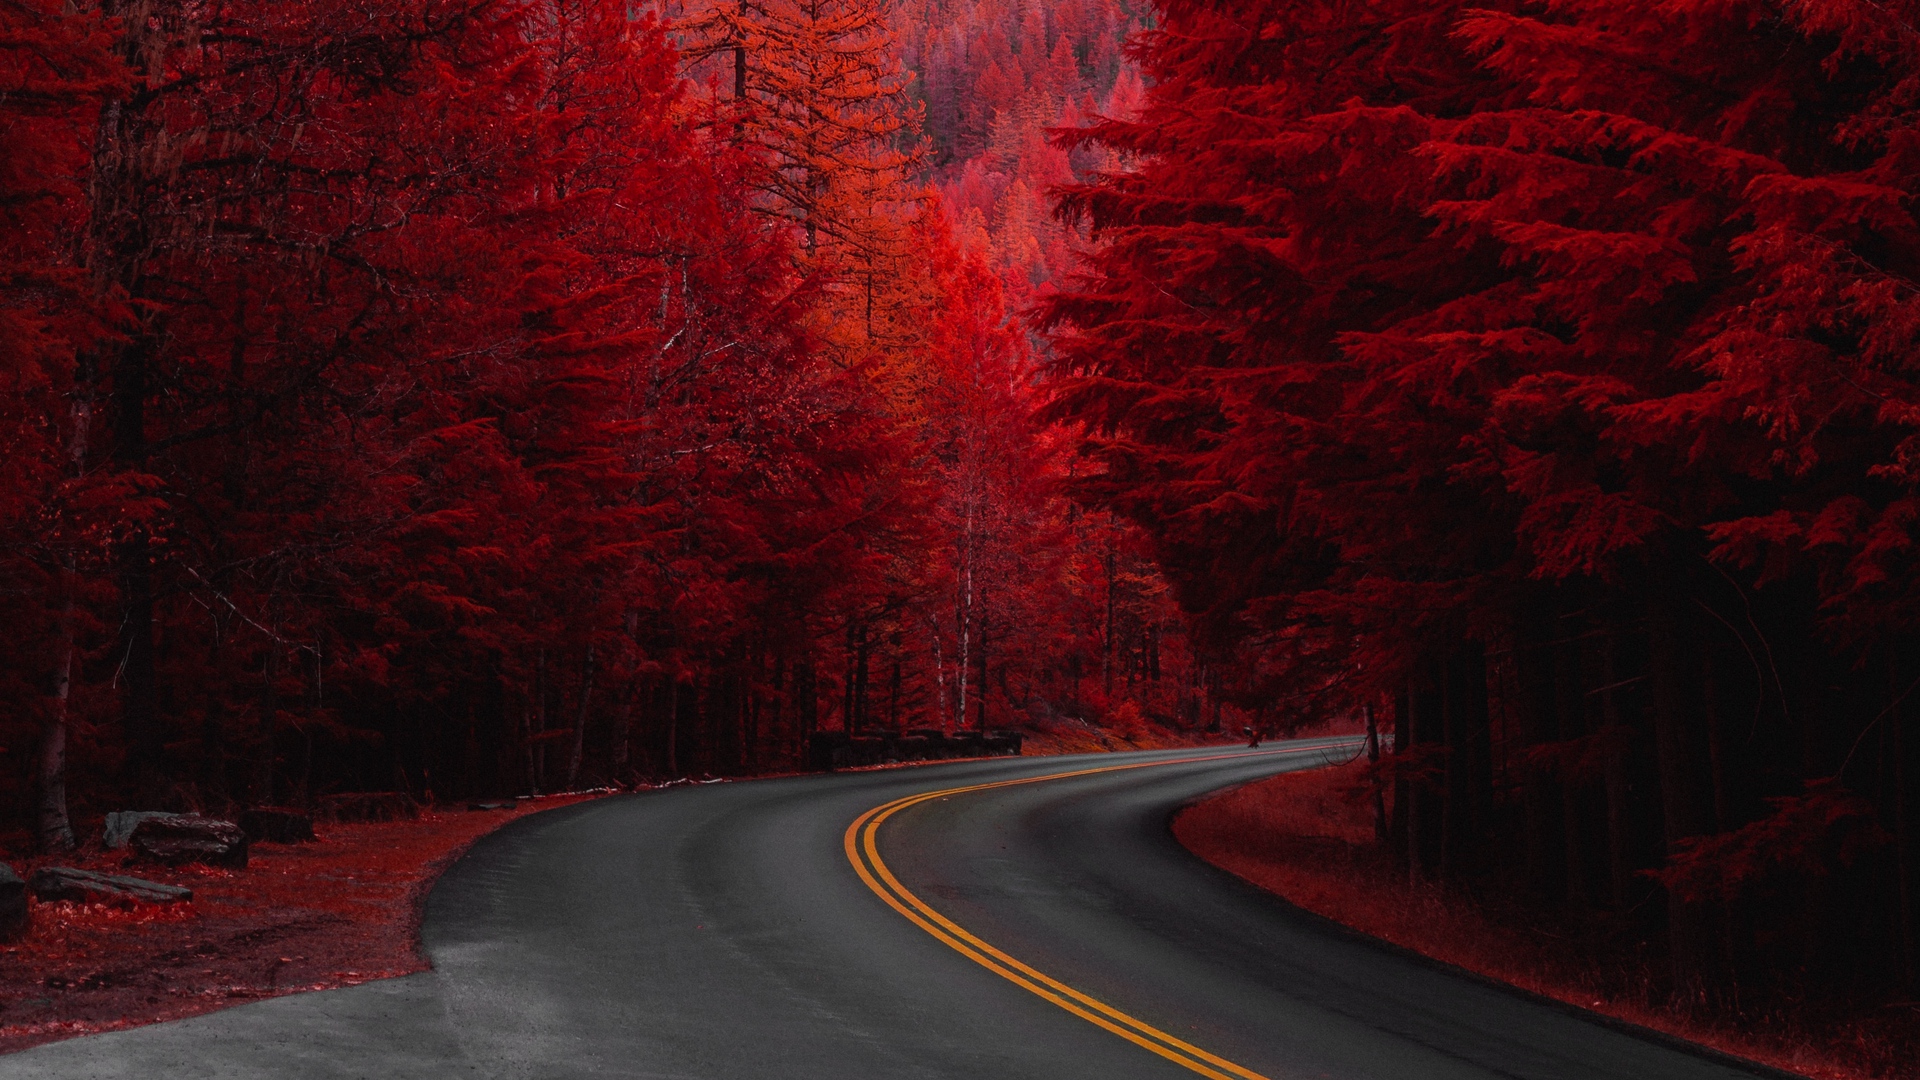 1920x1080p fond d'écran,rouge,arbre,route,ciel,feuille